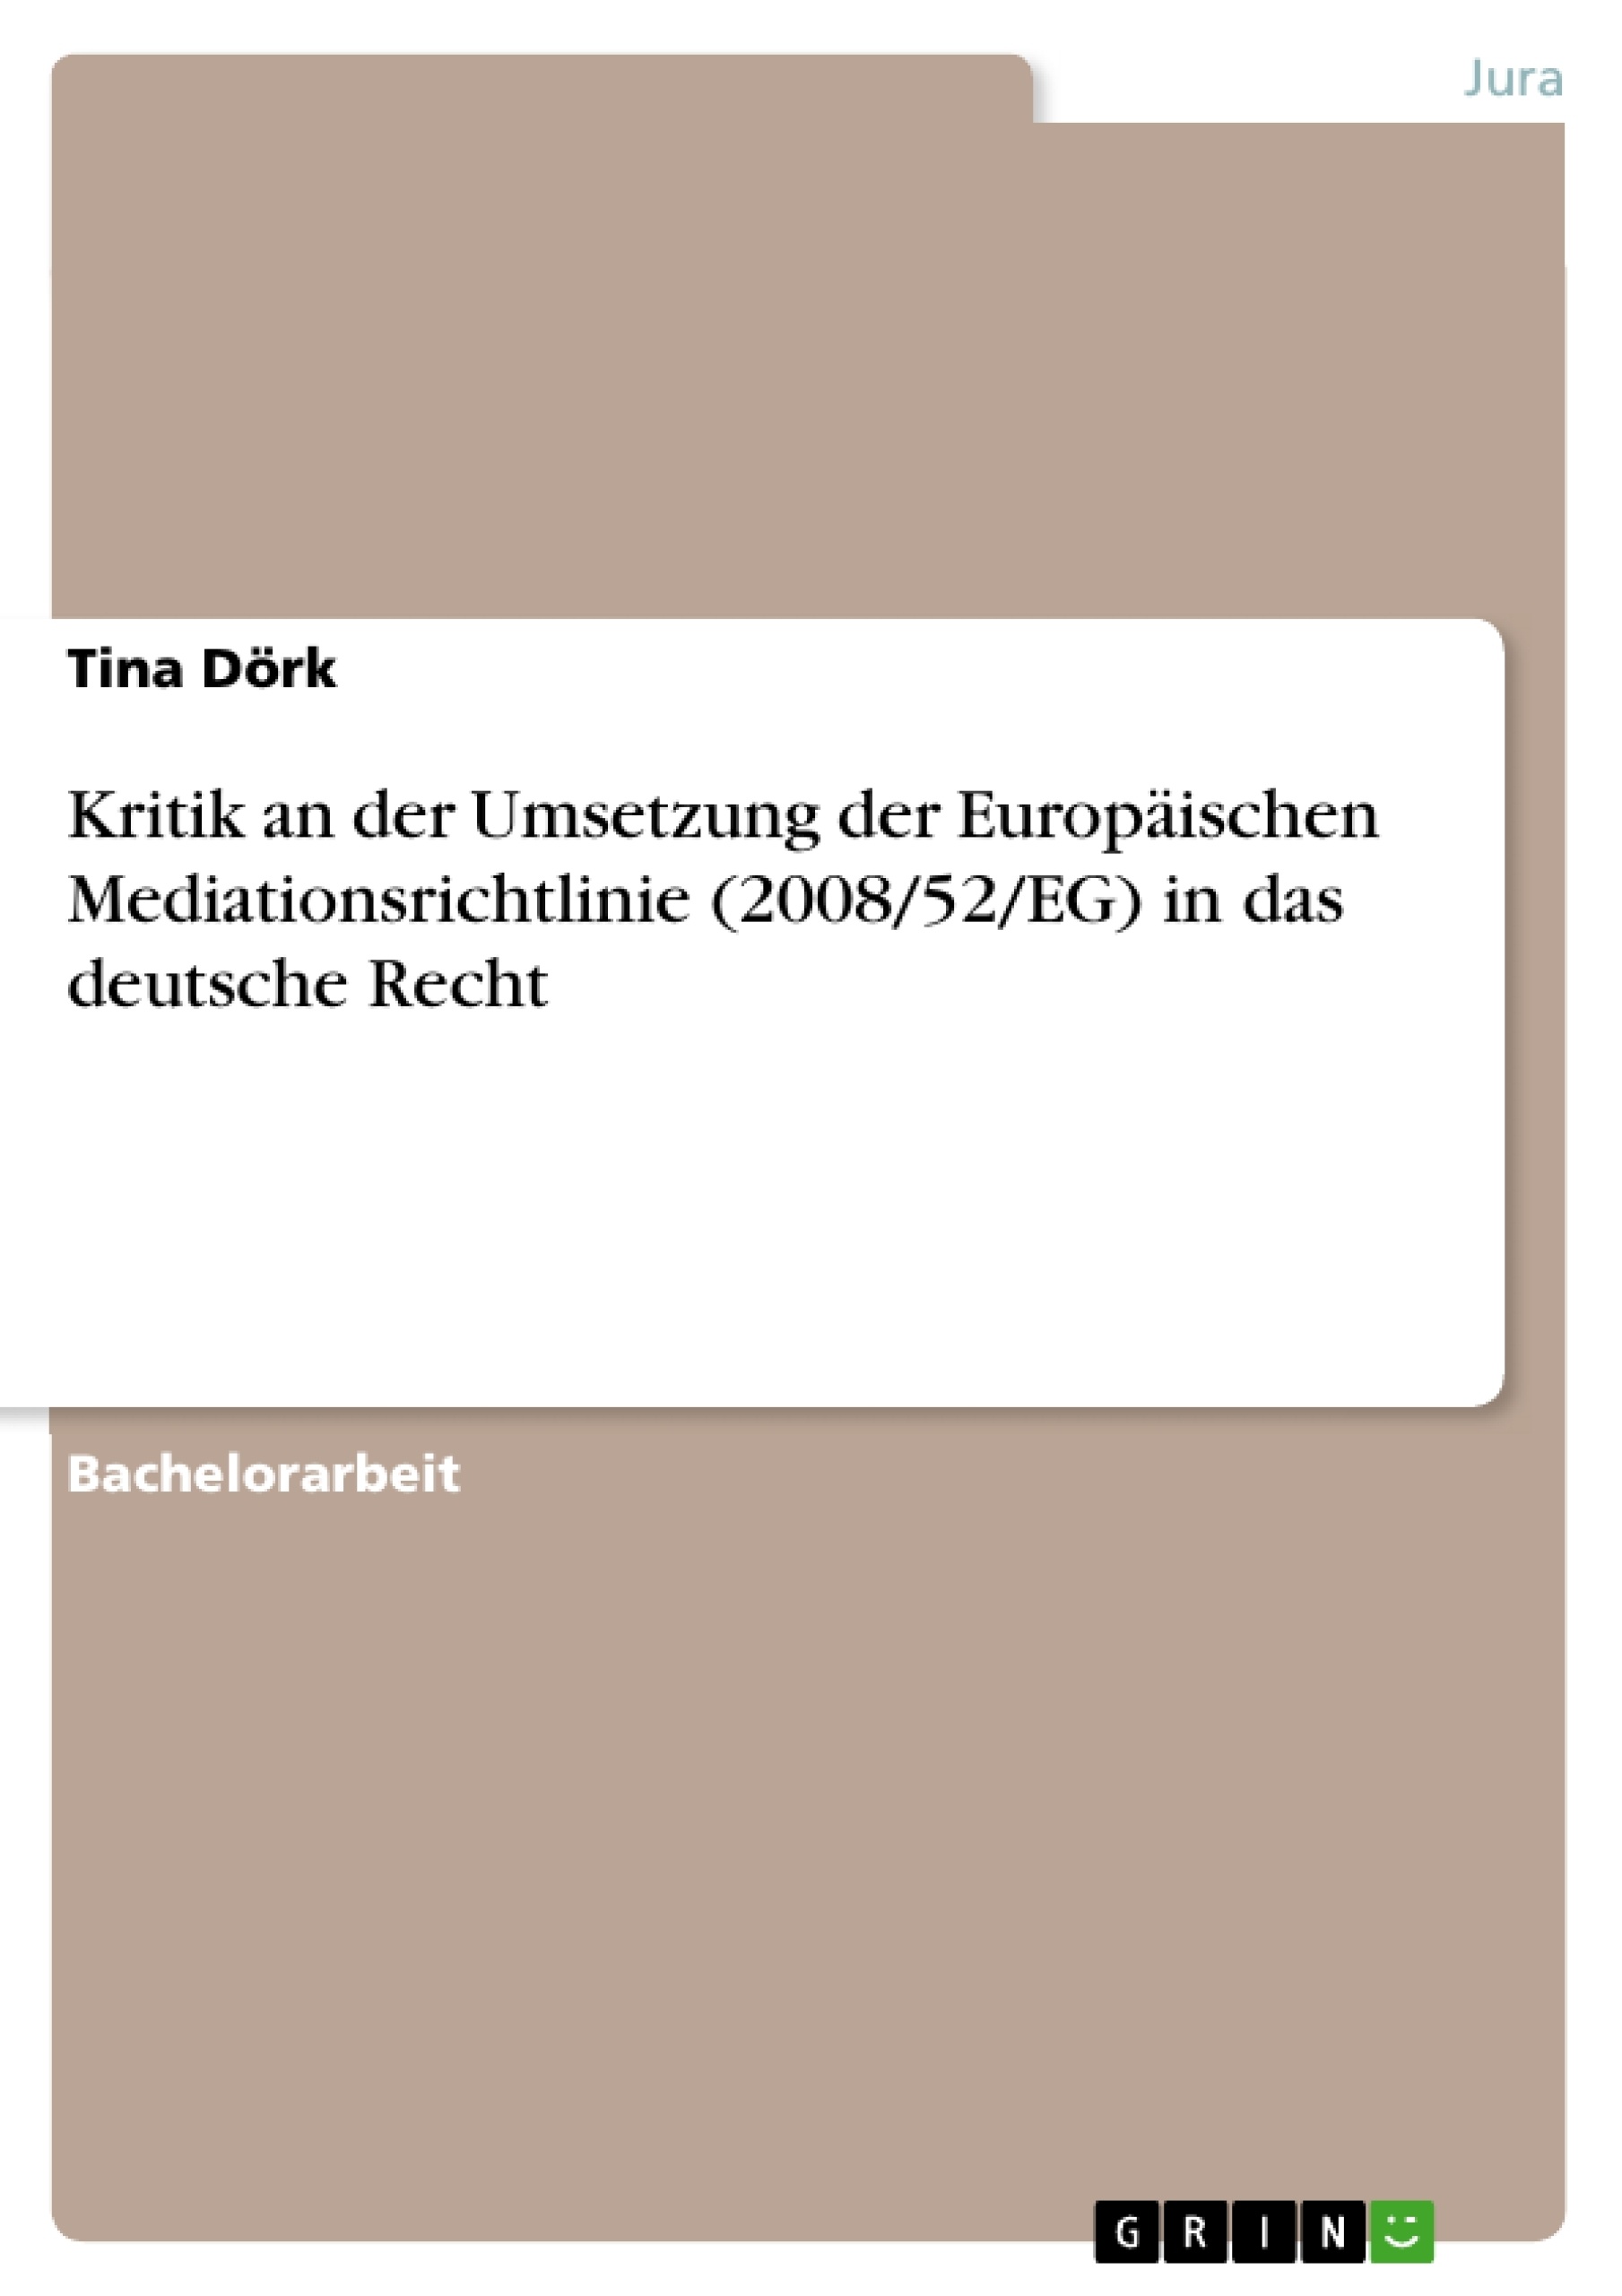 Título: Kritik an der Umsetzung der Europäischen Mediationsrichtlinie (2008/52/EG) in das deutsche Recht